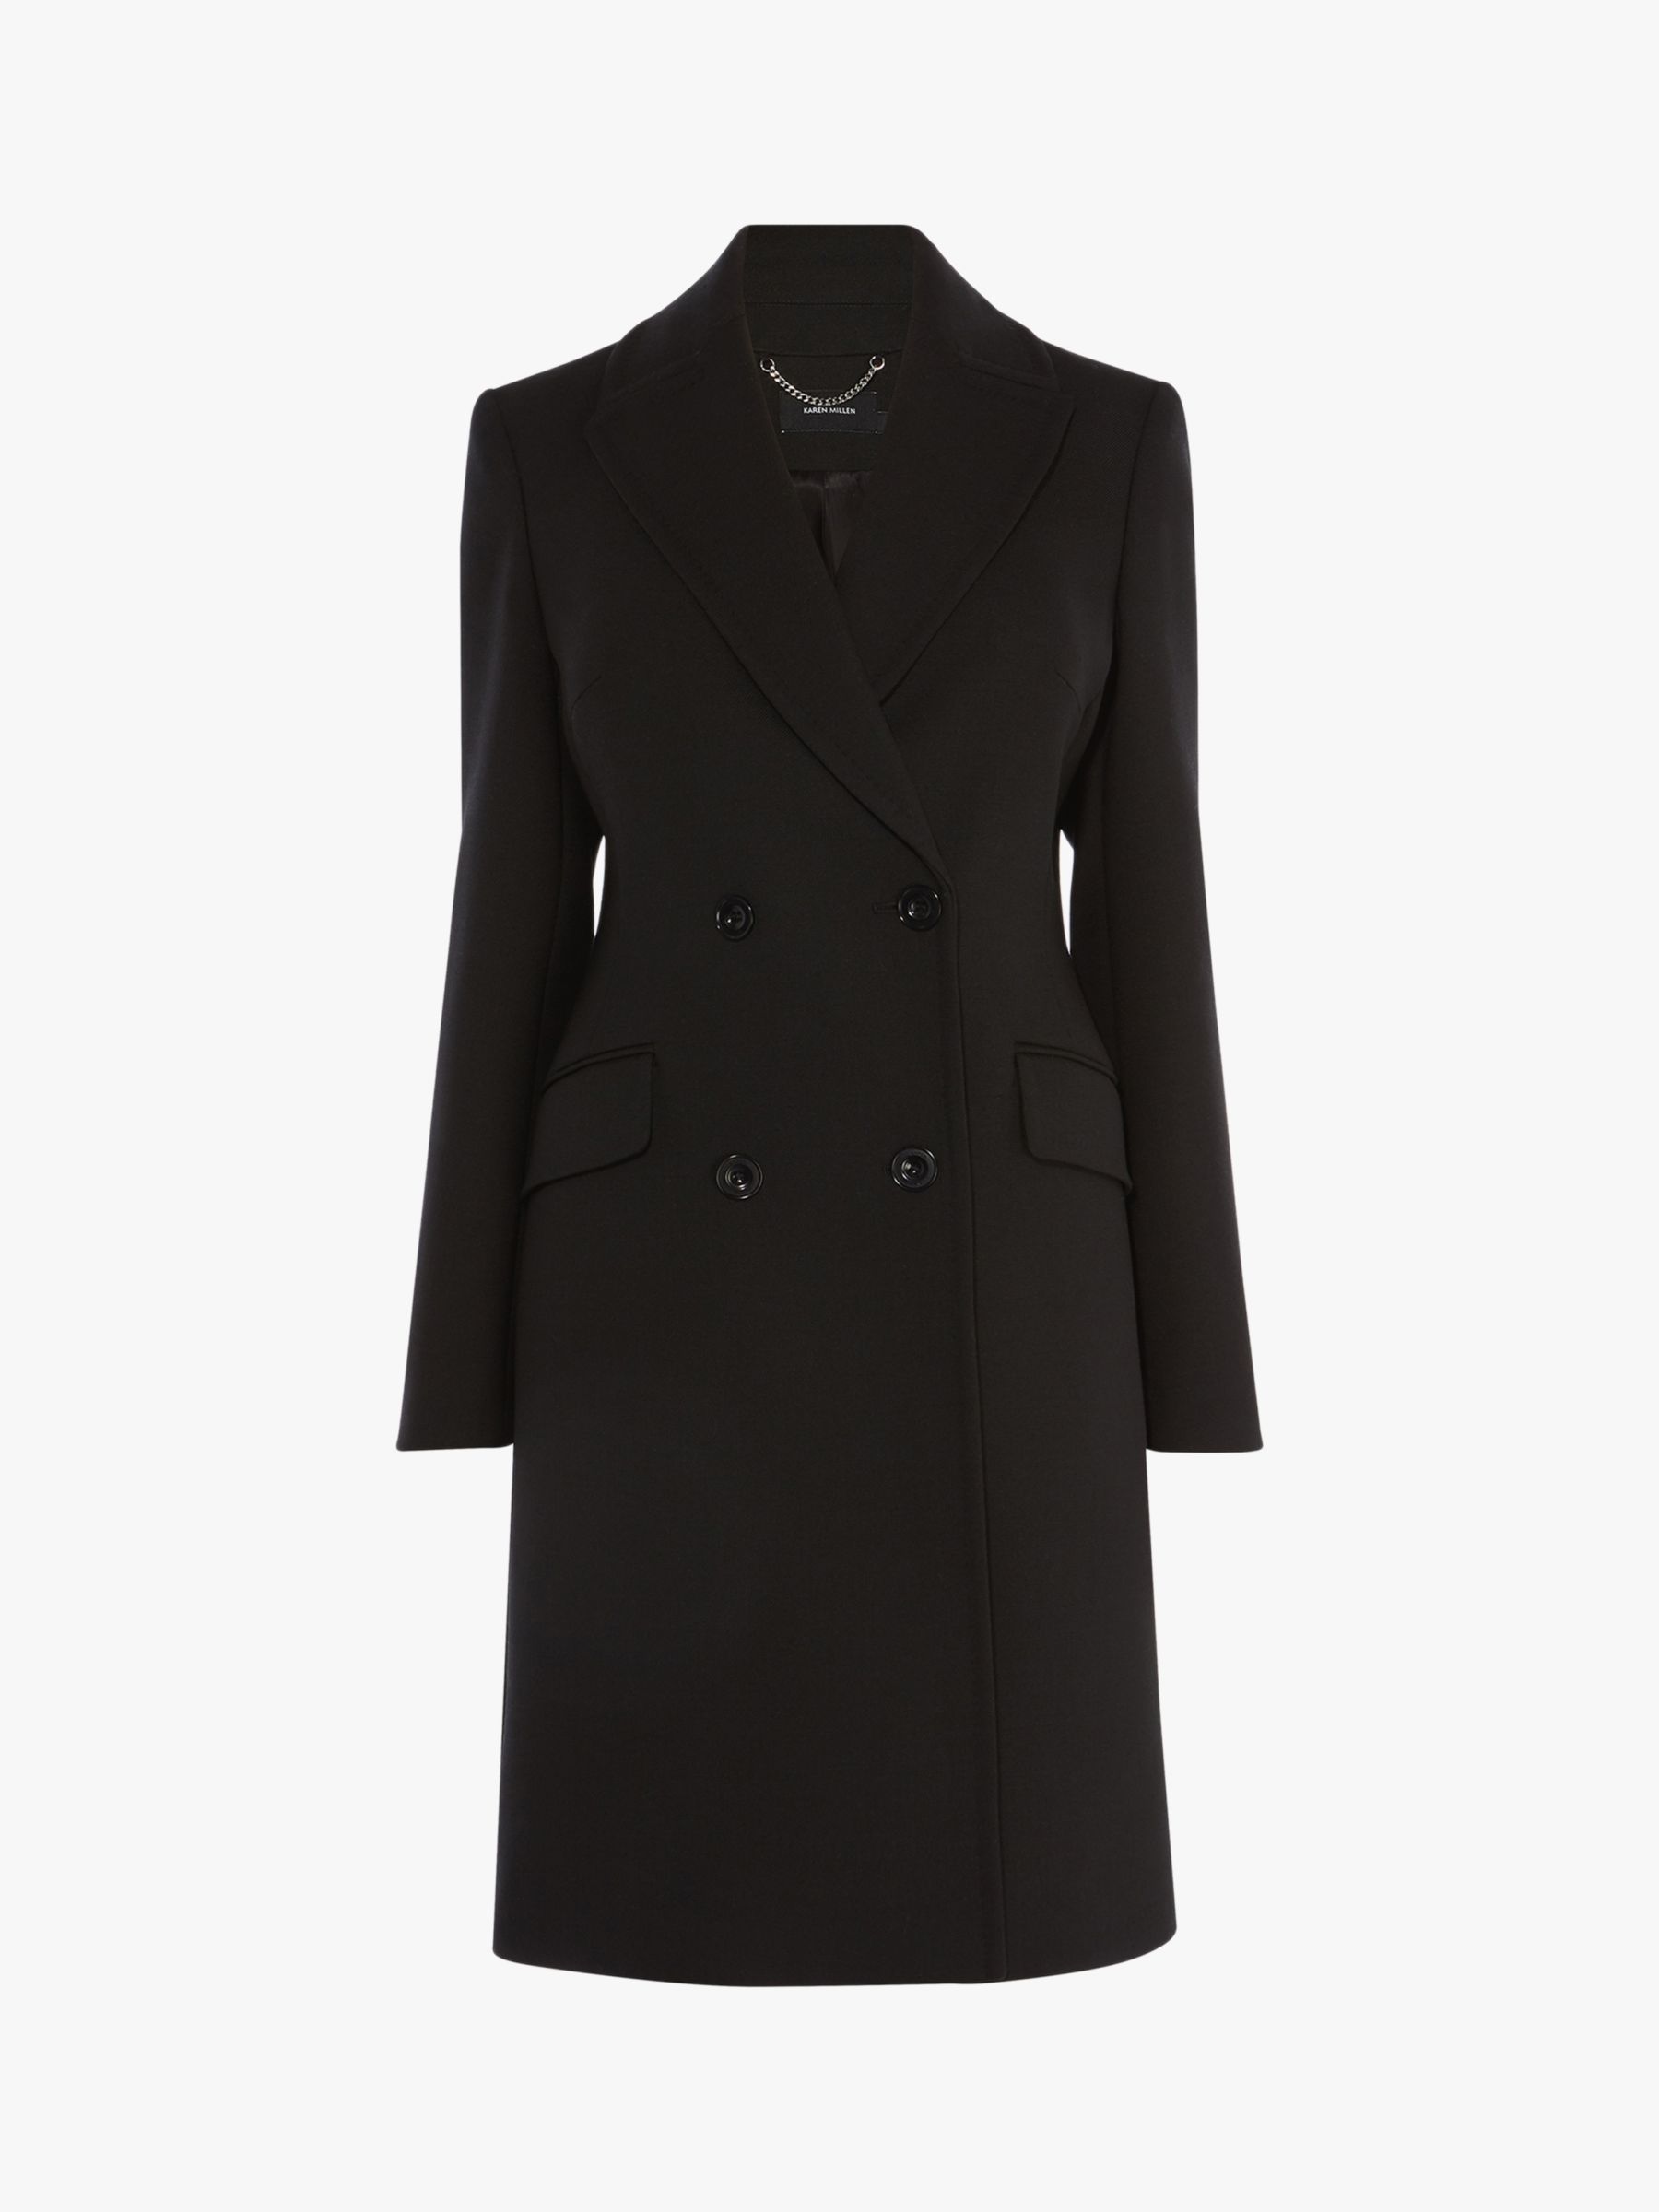 Karen Millen Double Breasted Coat, Black